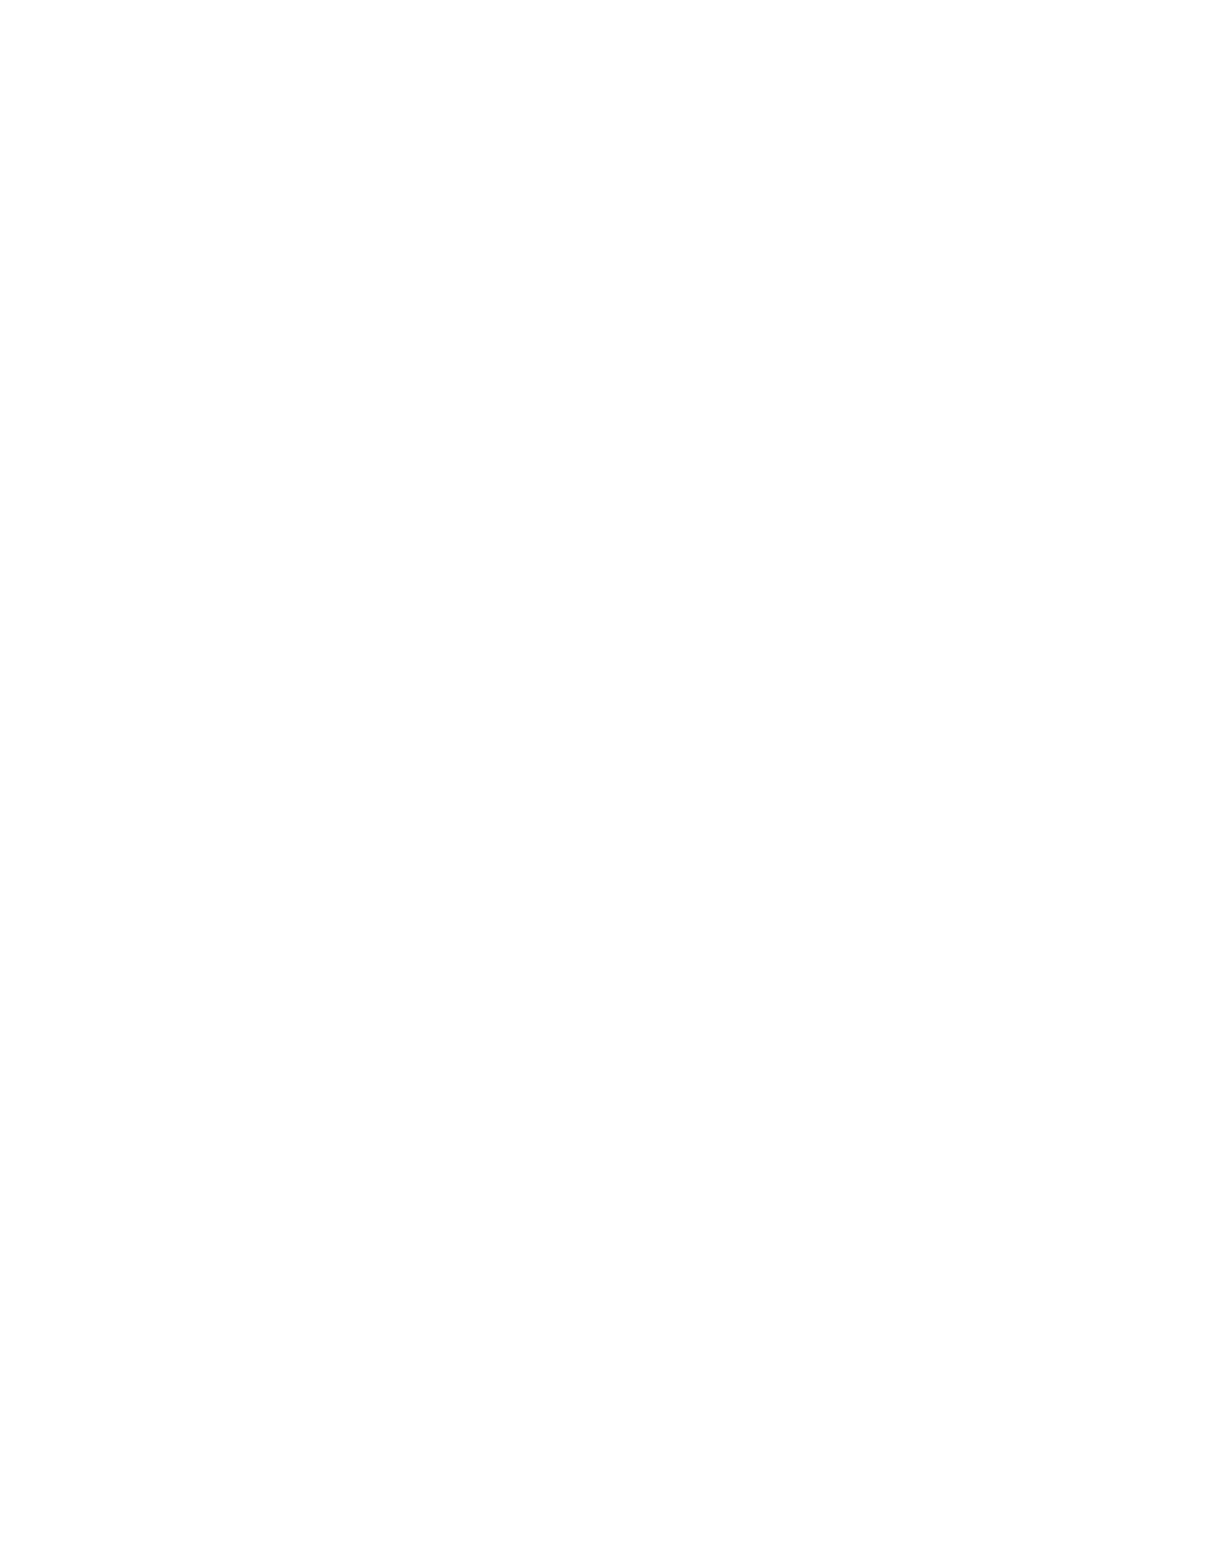 Lazard logo for dark backgrounds (transparent PNG)